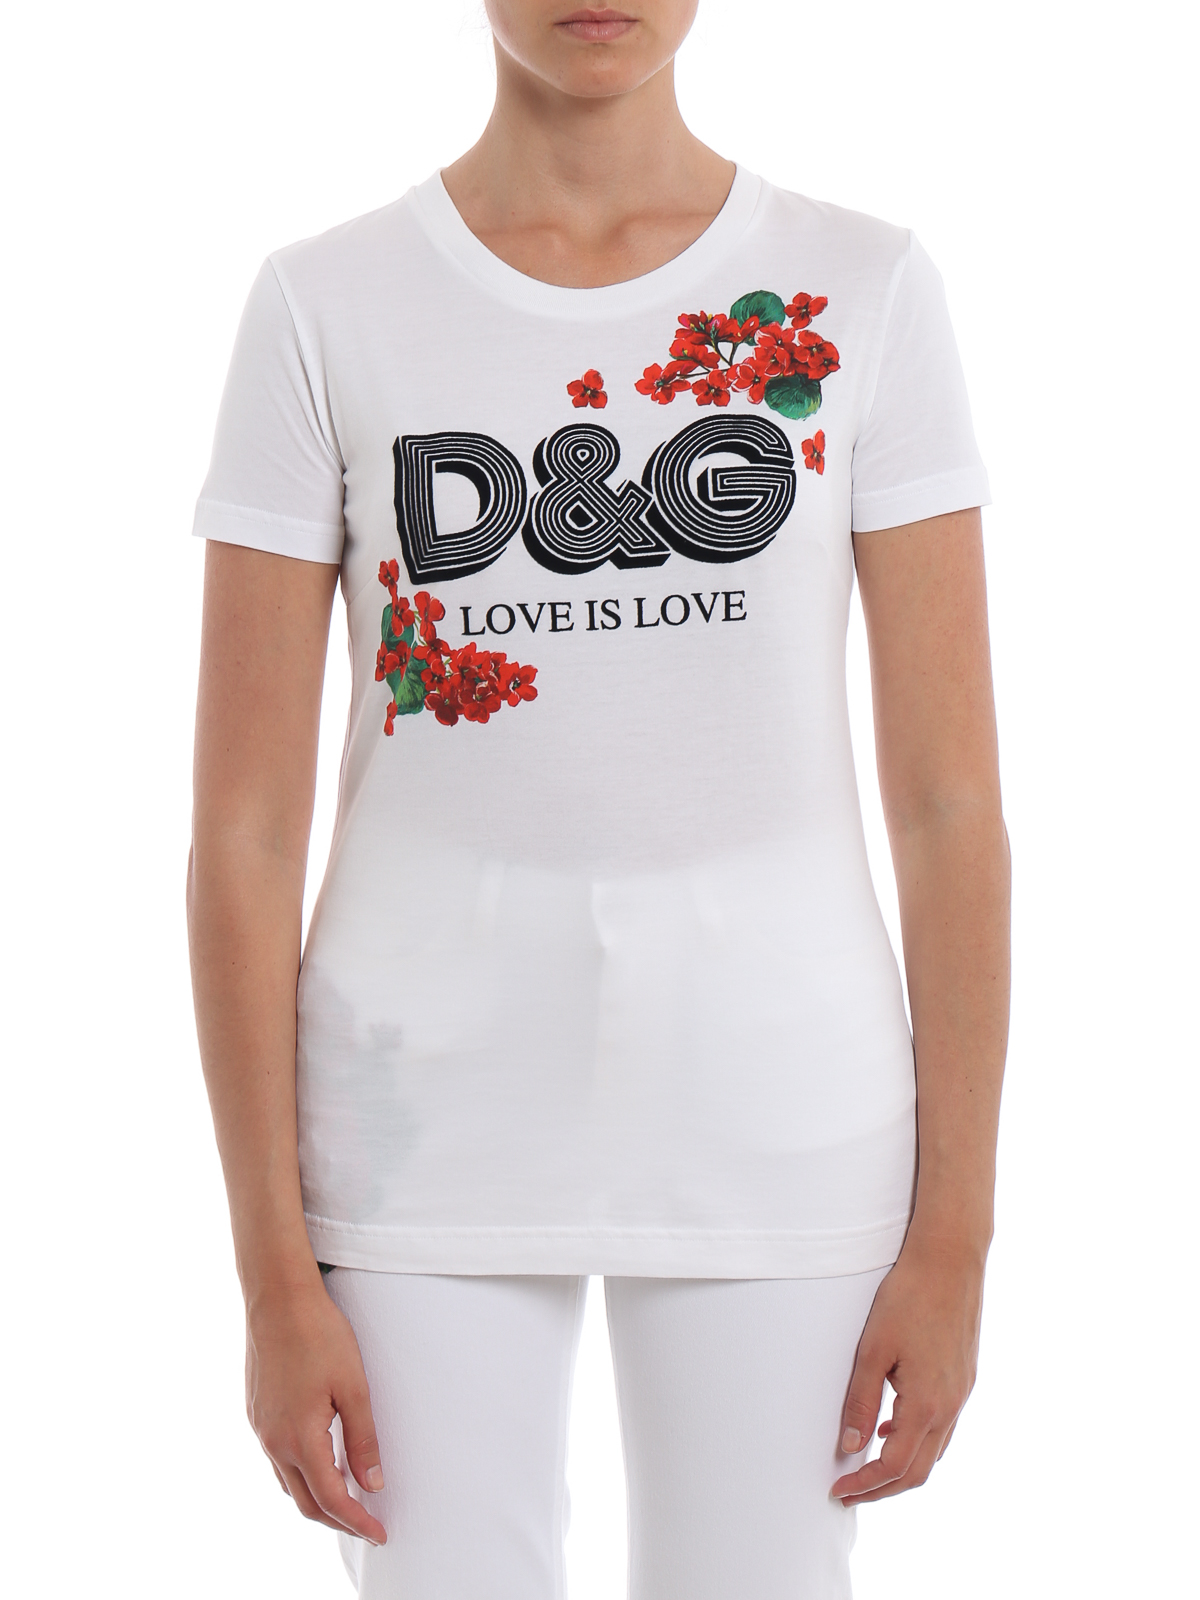 WOMEN FASHION Shirts & T-shirts T-shirt Lace openwork Dolce&Gabbana T-shirt discount 64% White S 